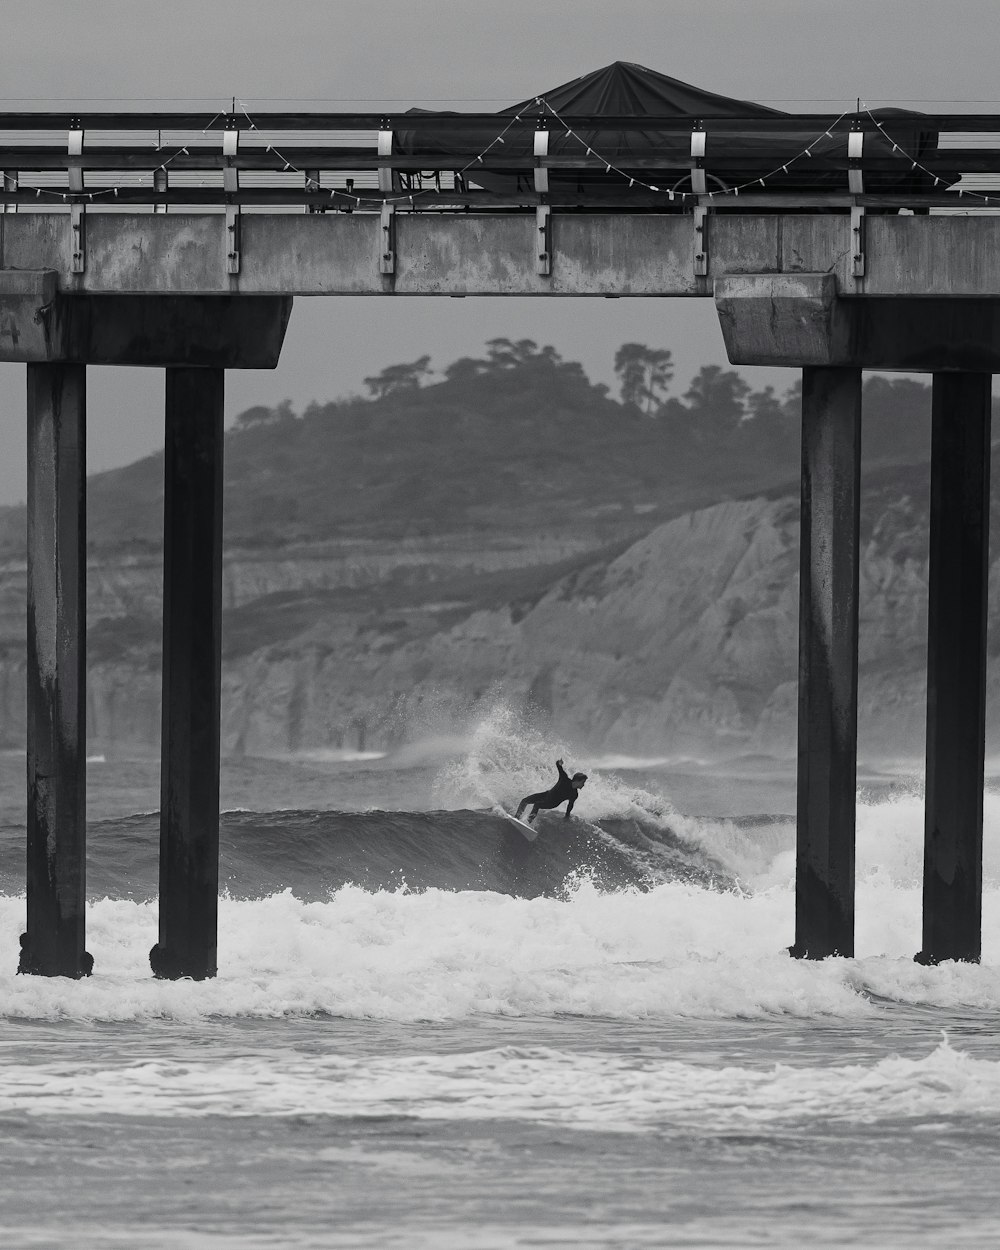 a surfer riding a wave under a bridge